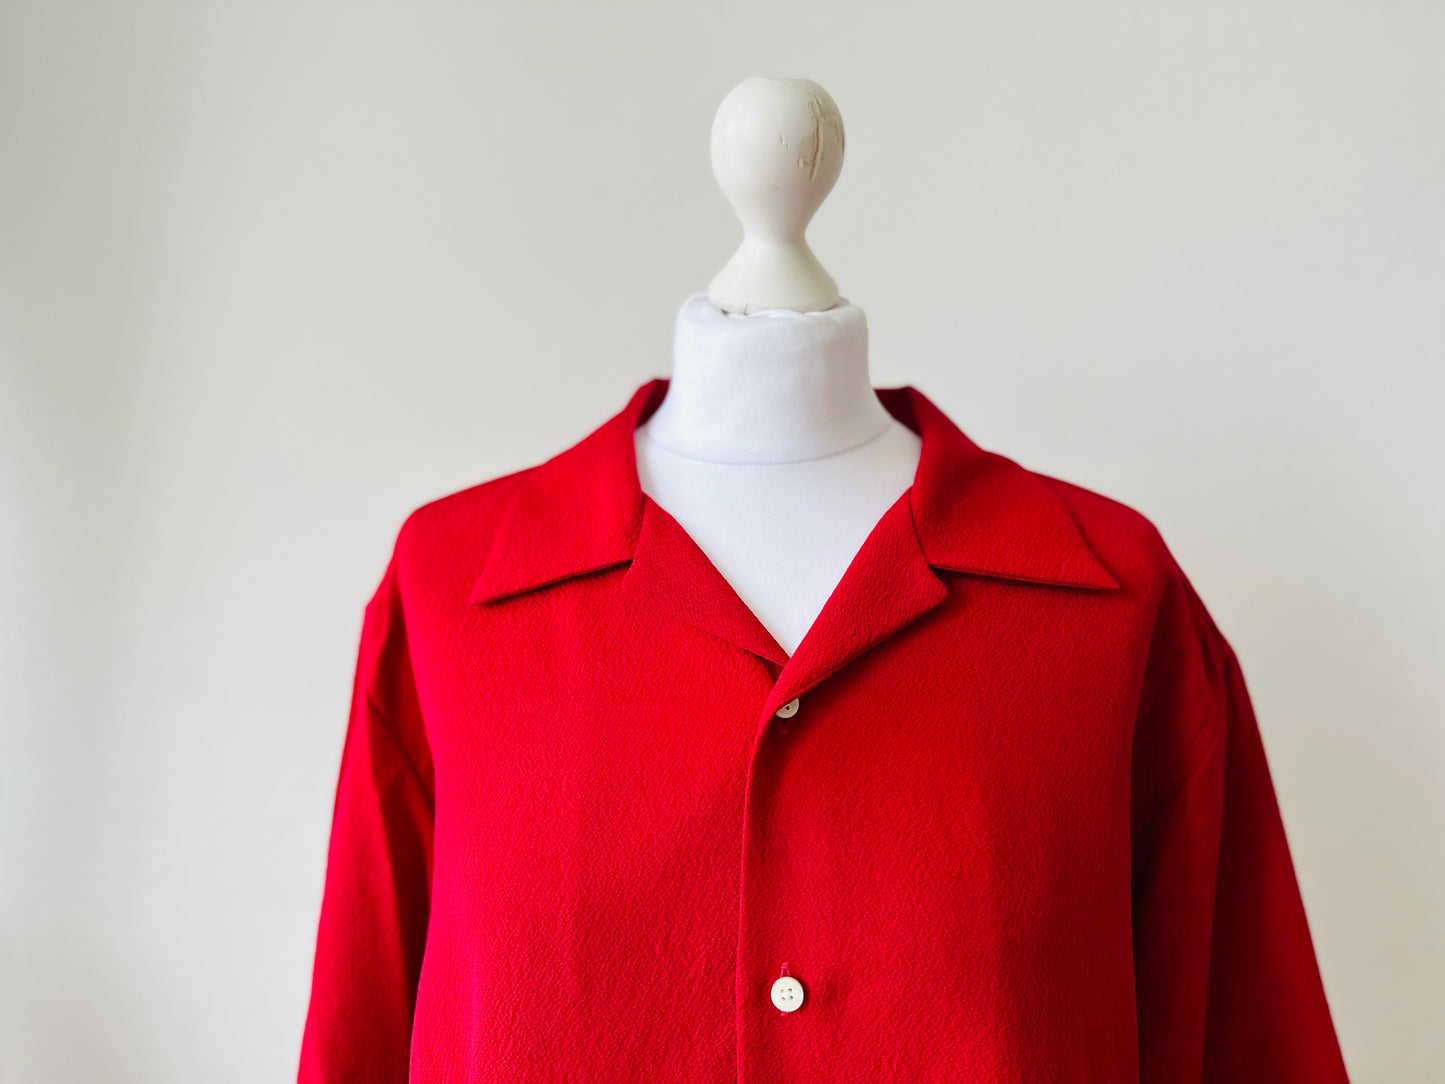 【Rouge, pin et glycine】 chemise hawaïenne / taille: 2L ＜ Nouveau ・ Silk ＞ pour les hommes, pour les femmes, le kimono japonais, les vêtements unisexais japonais, l'unisexe, les cadeaux japonais, l'article original